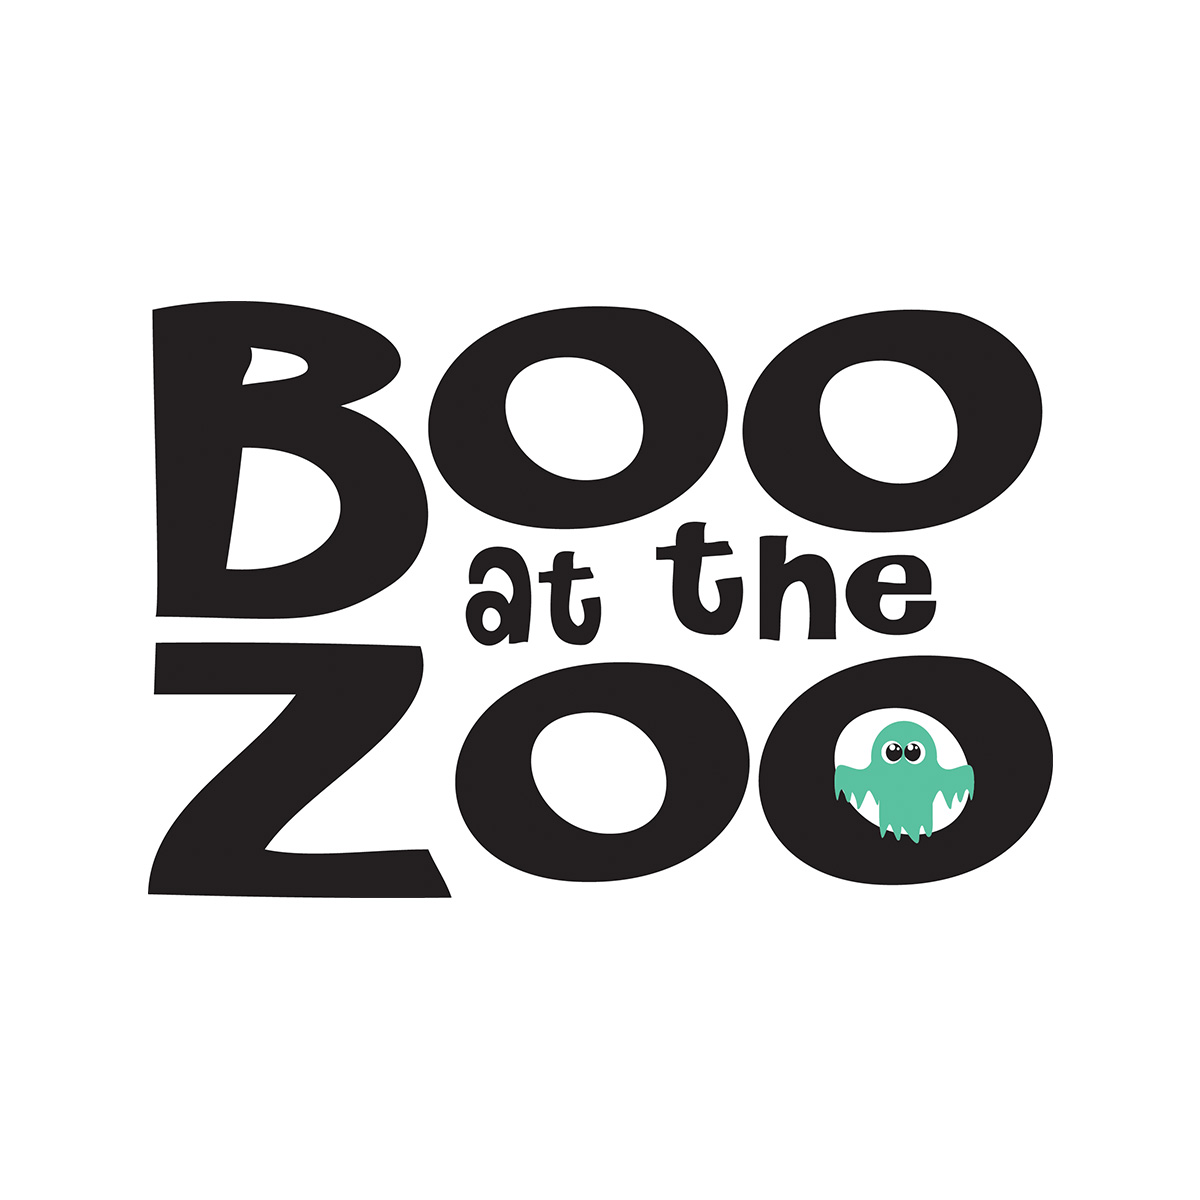 Boo at the zoo logo